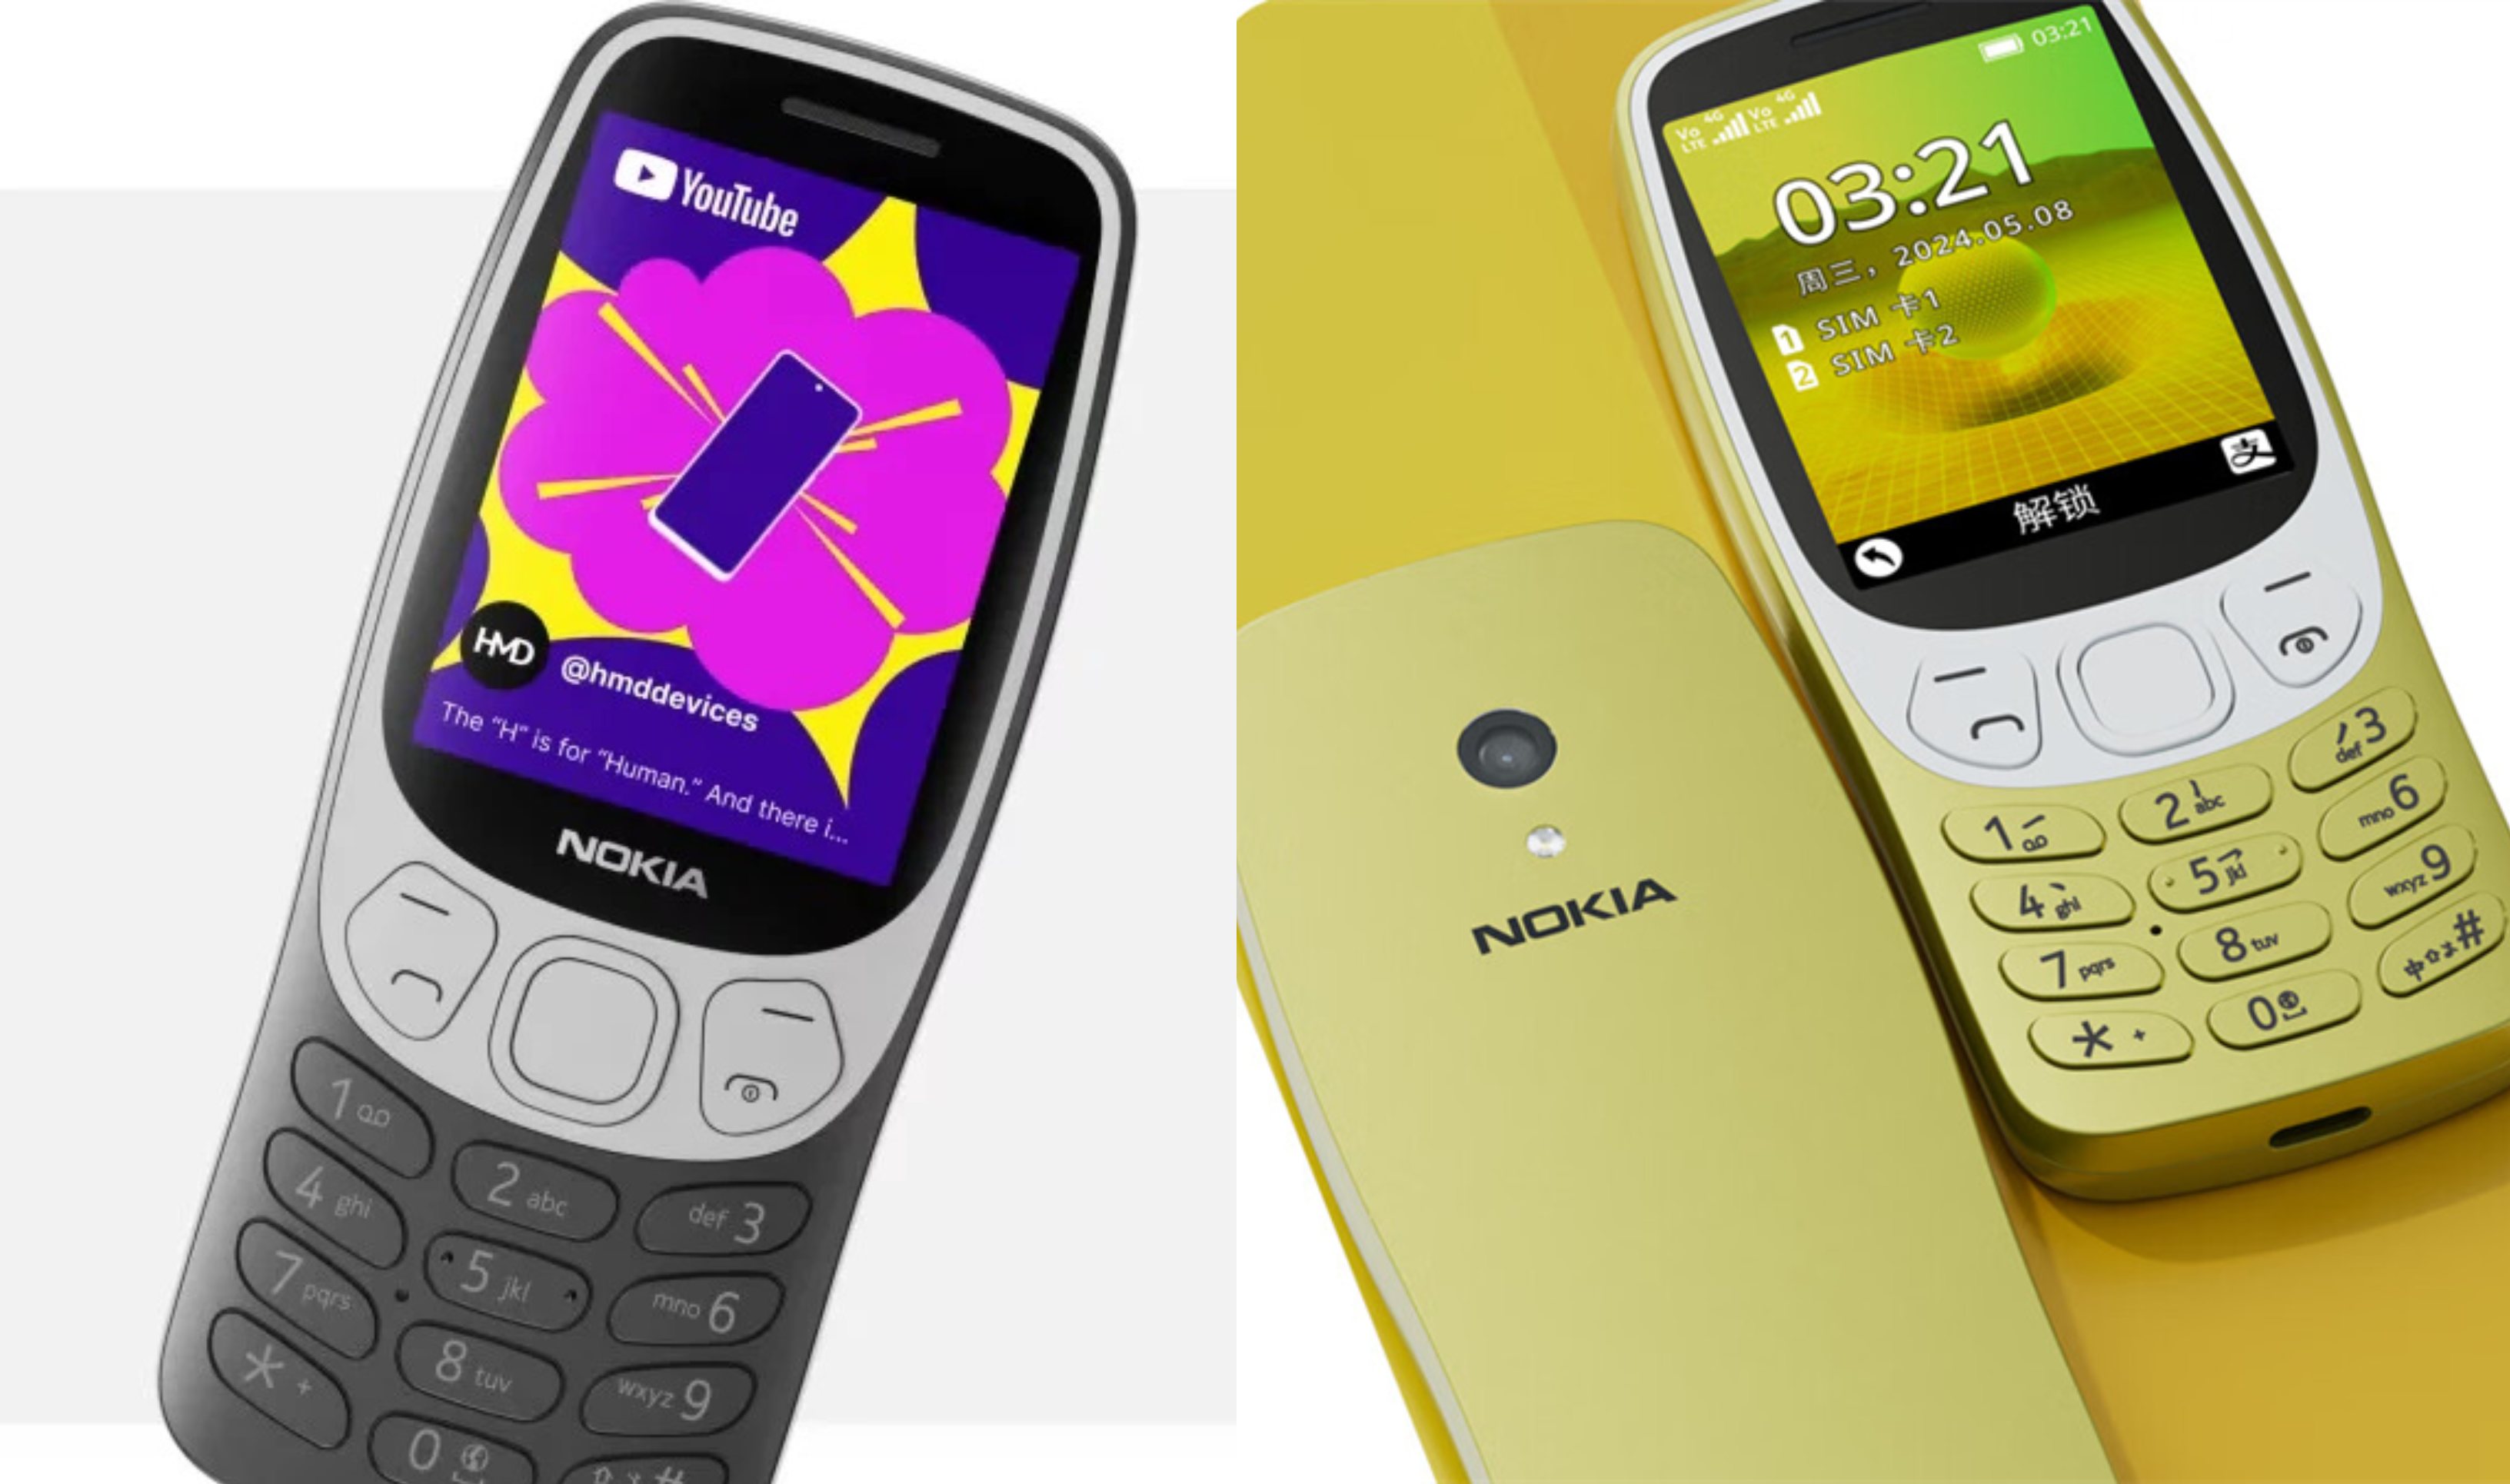 Nokia 3210 4G cháy hàng vì nhu cầu cao, hot hơn cả iPad Pro chip M4 của Apple dễ thành huyền thoại